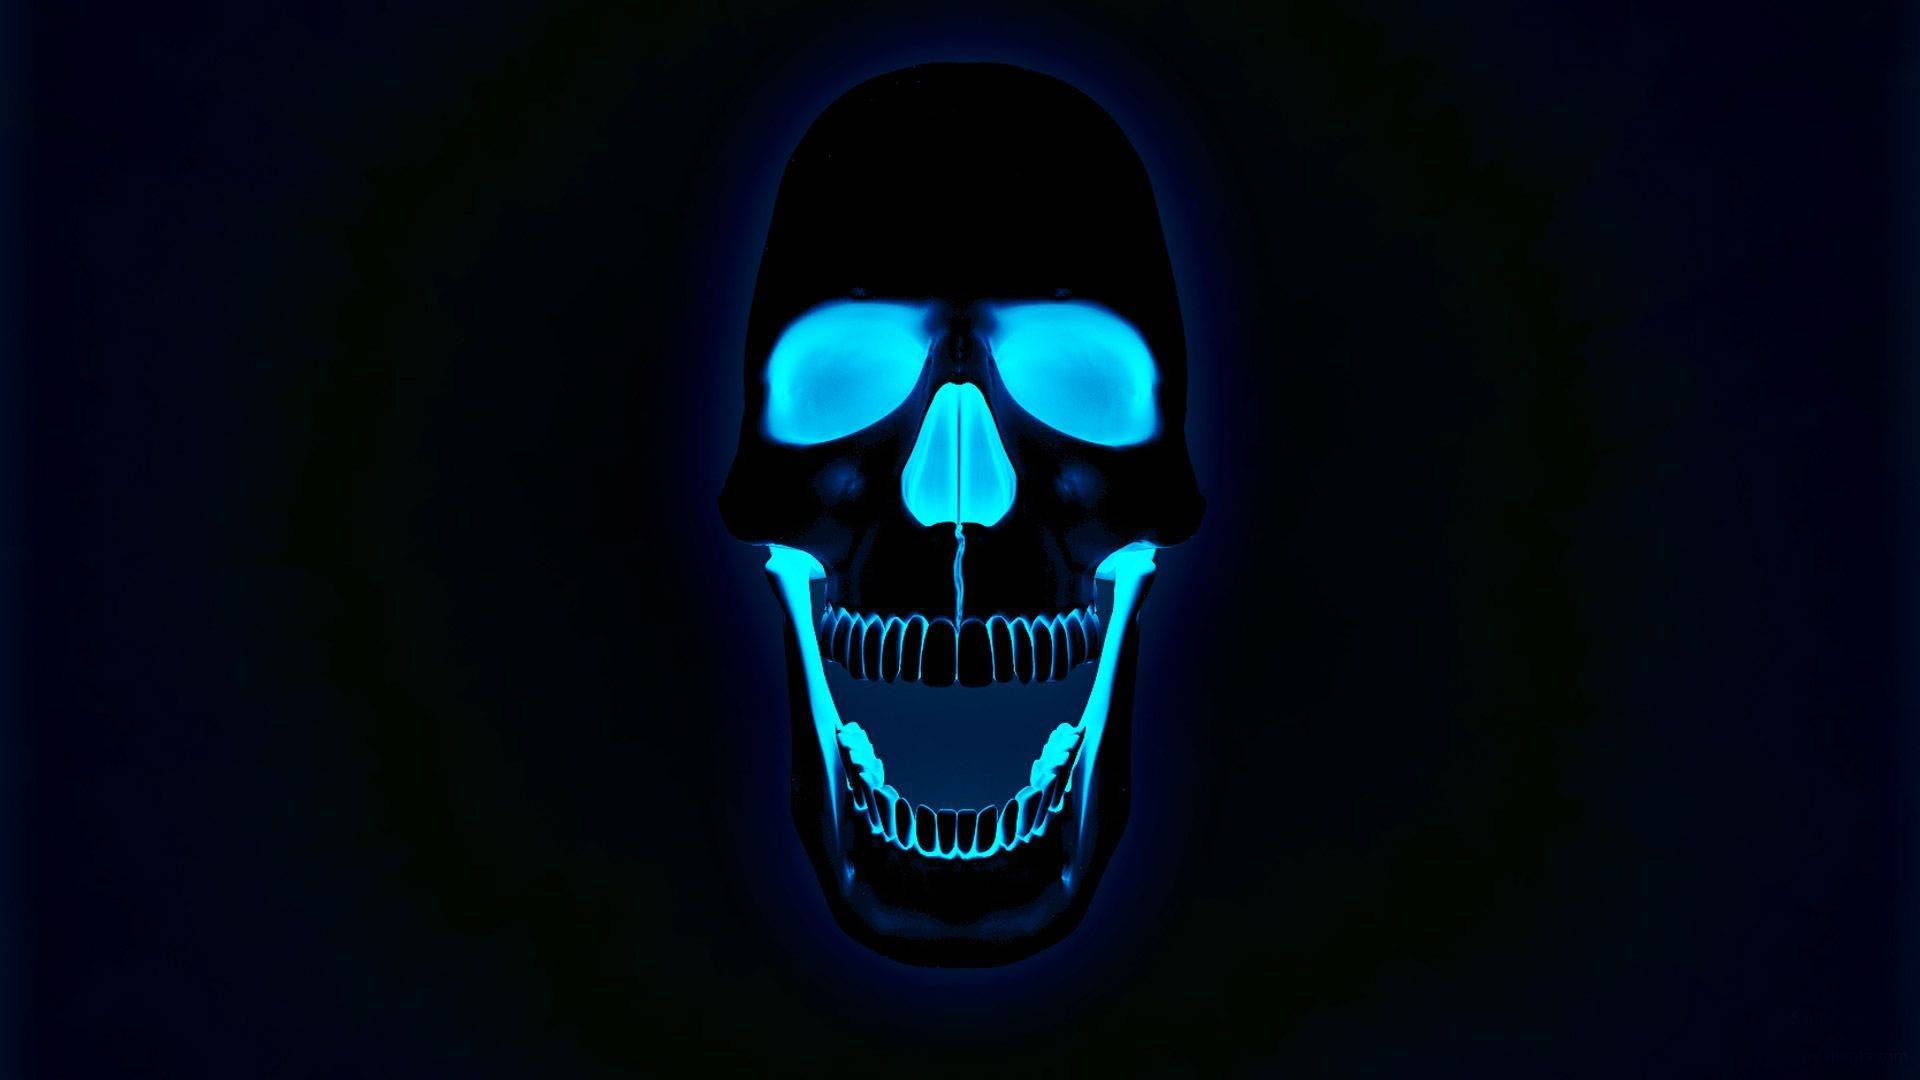 Glowing Blue Hd Skull Wallpaper